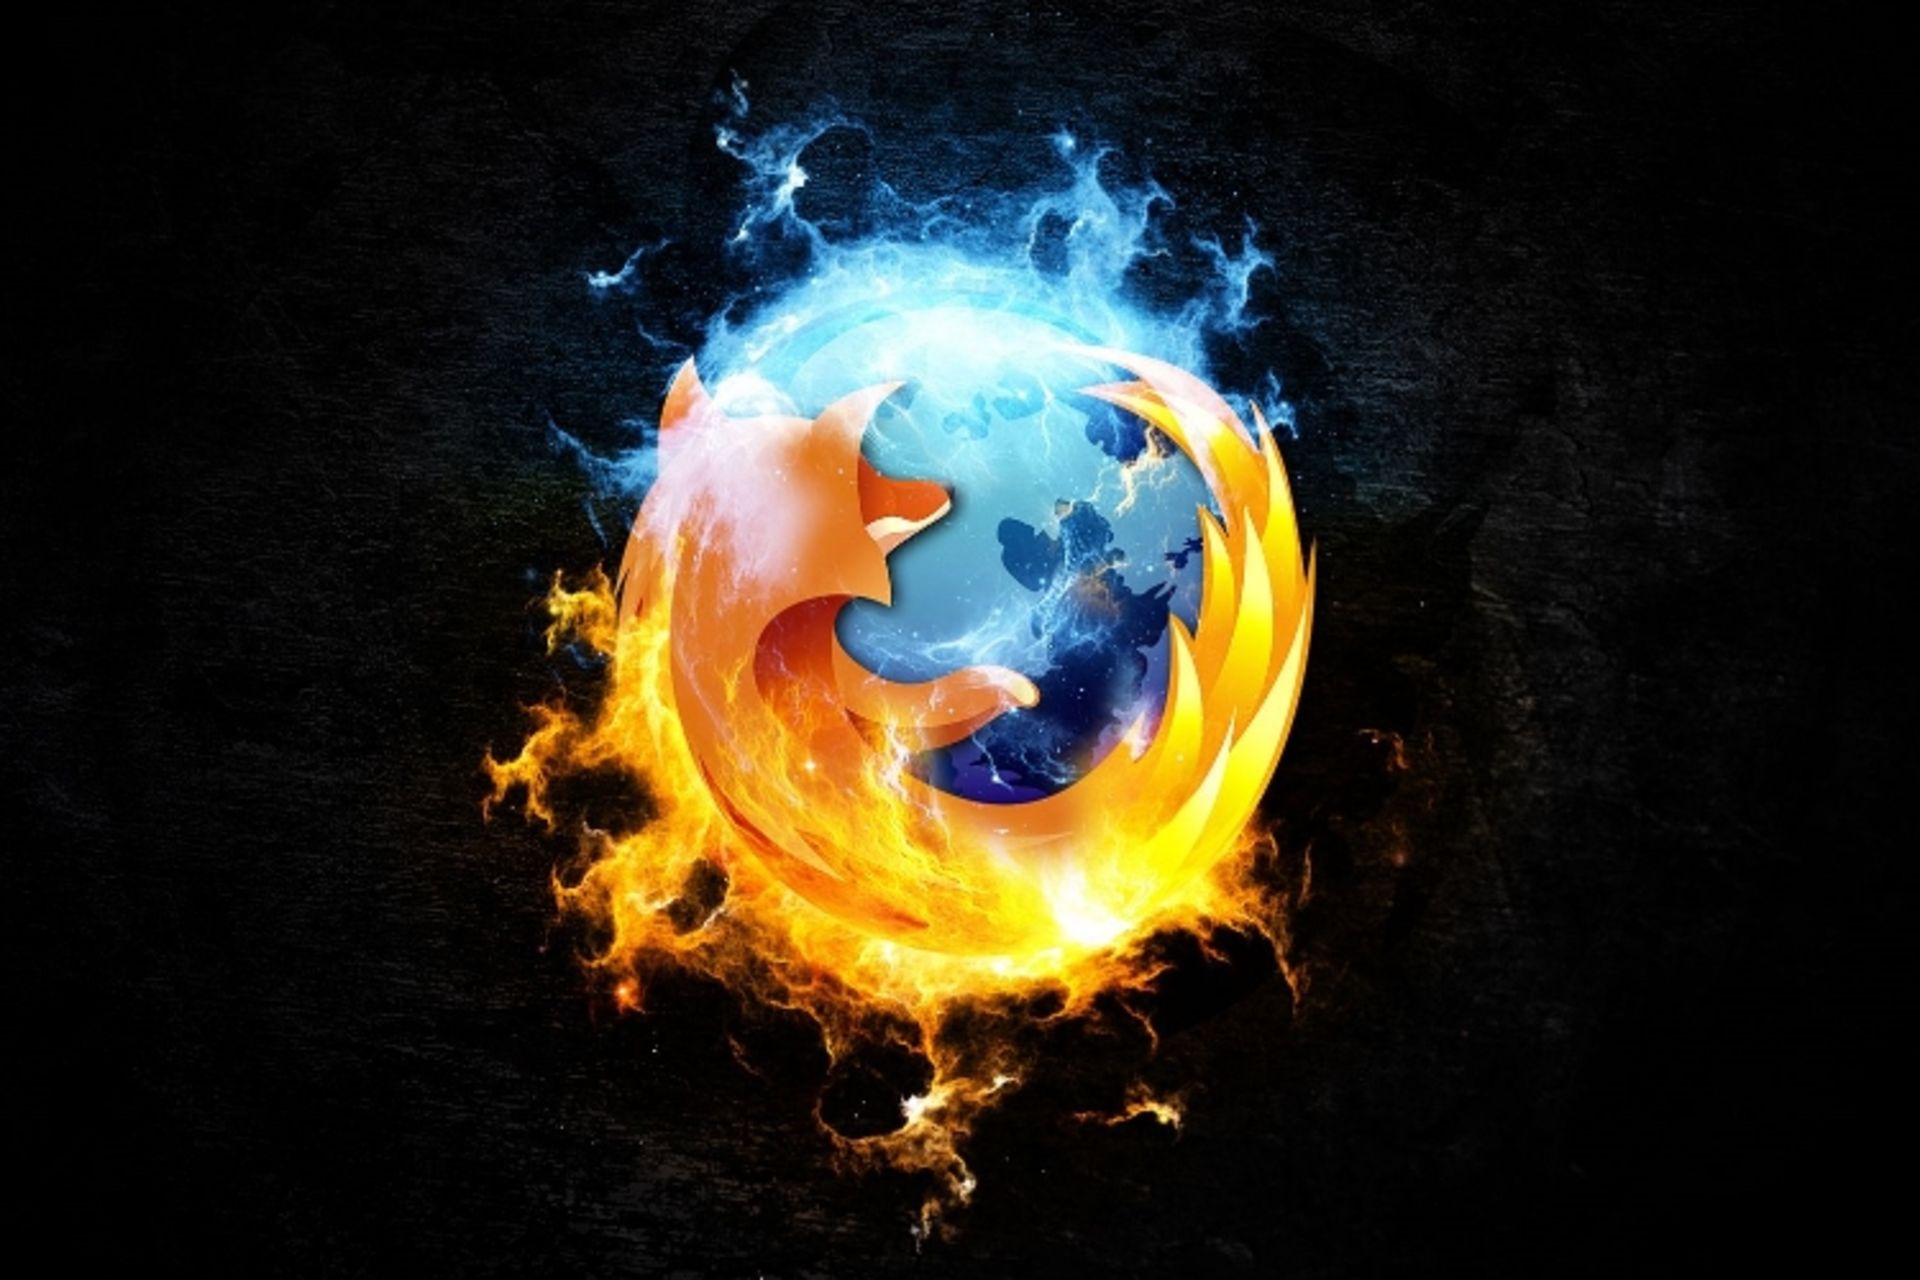 مرجع متخصصين ايران موزيلا فايرفاكس / Mozilla Firefox